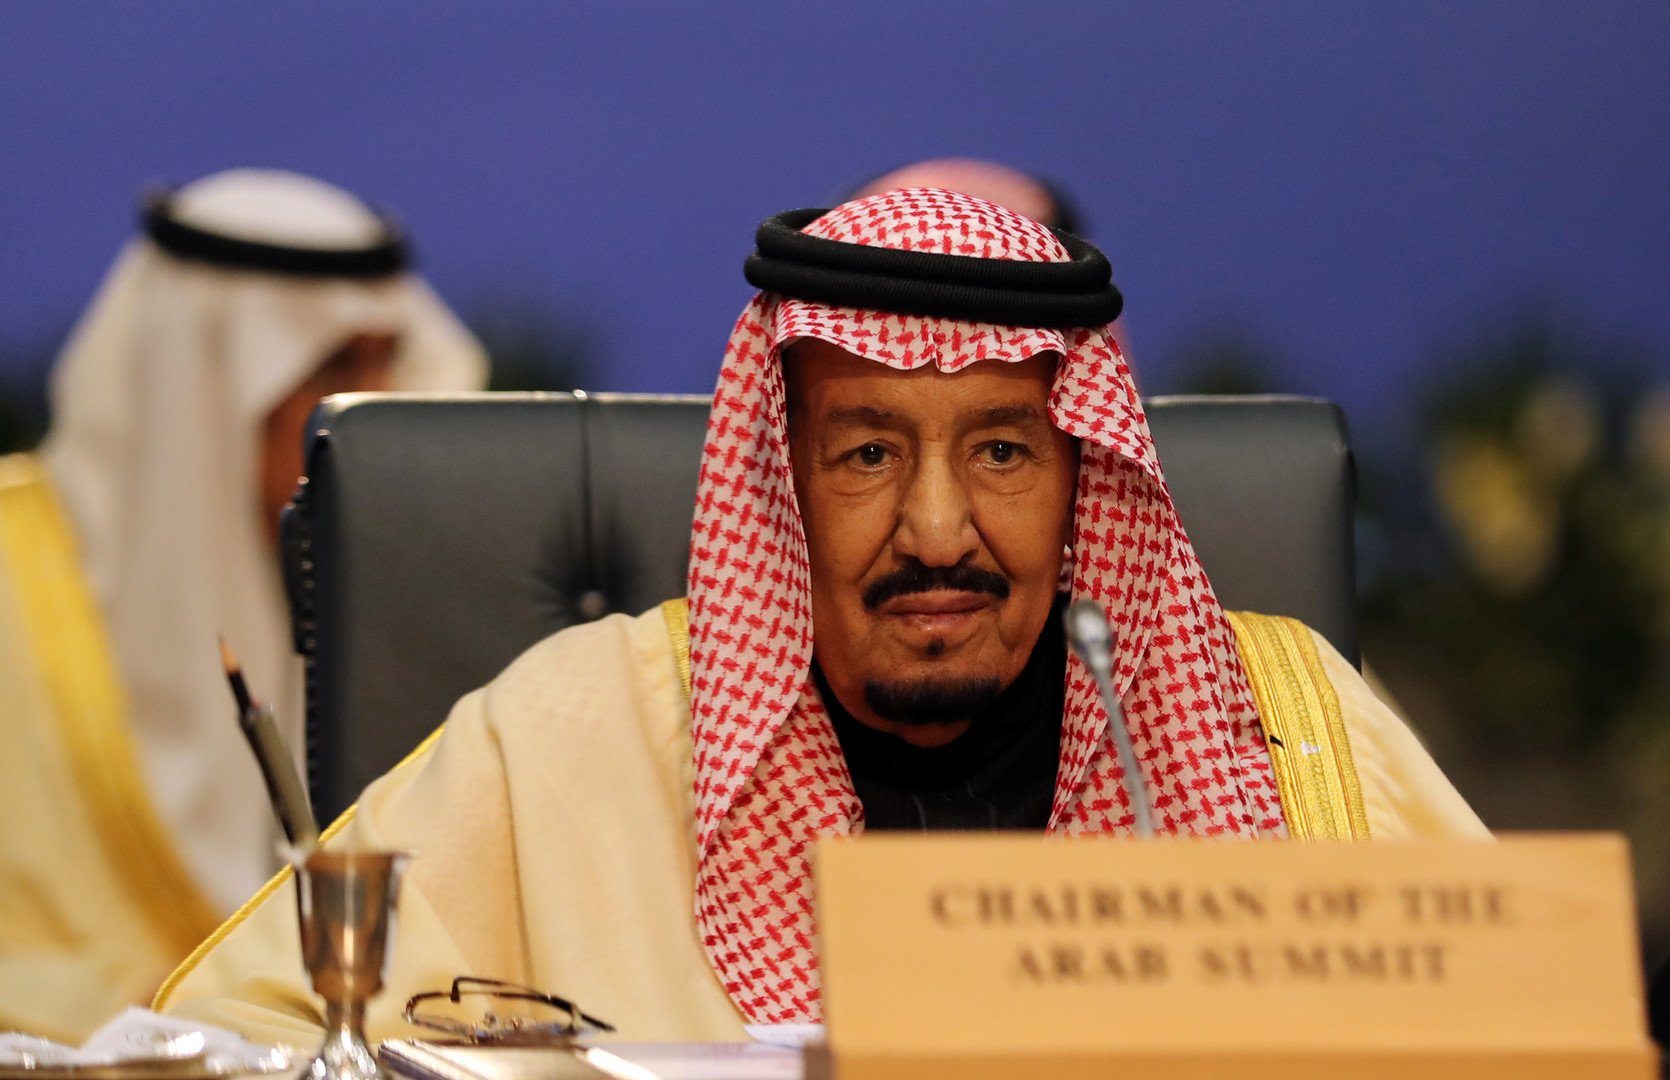 الملك سلمان يدعو لعقد قمتين عربية وخليجية طارئتين في مكة